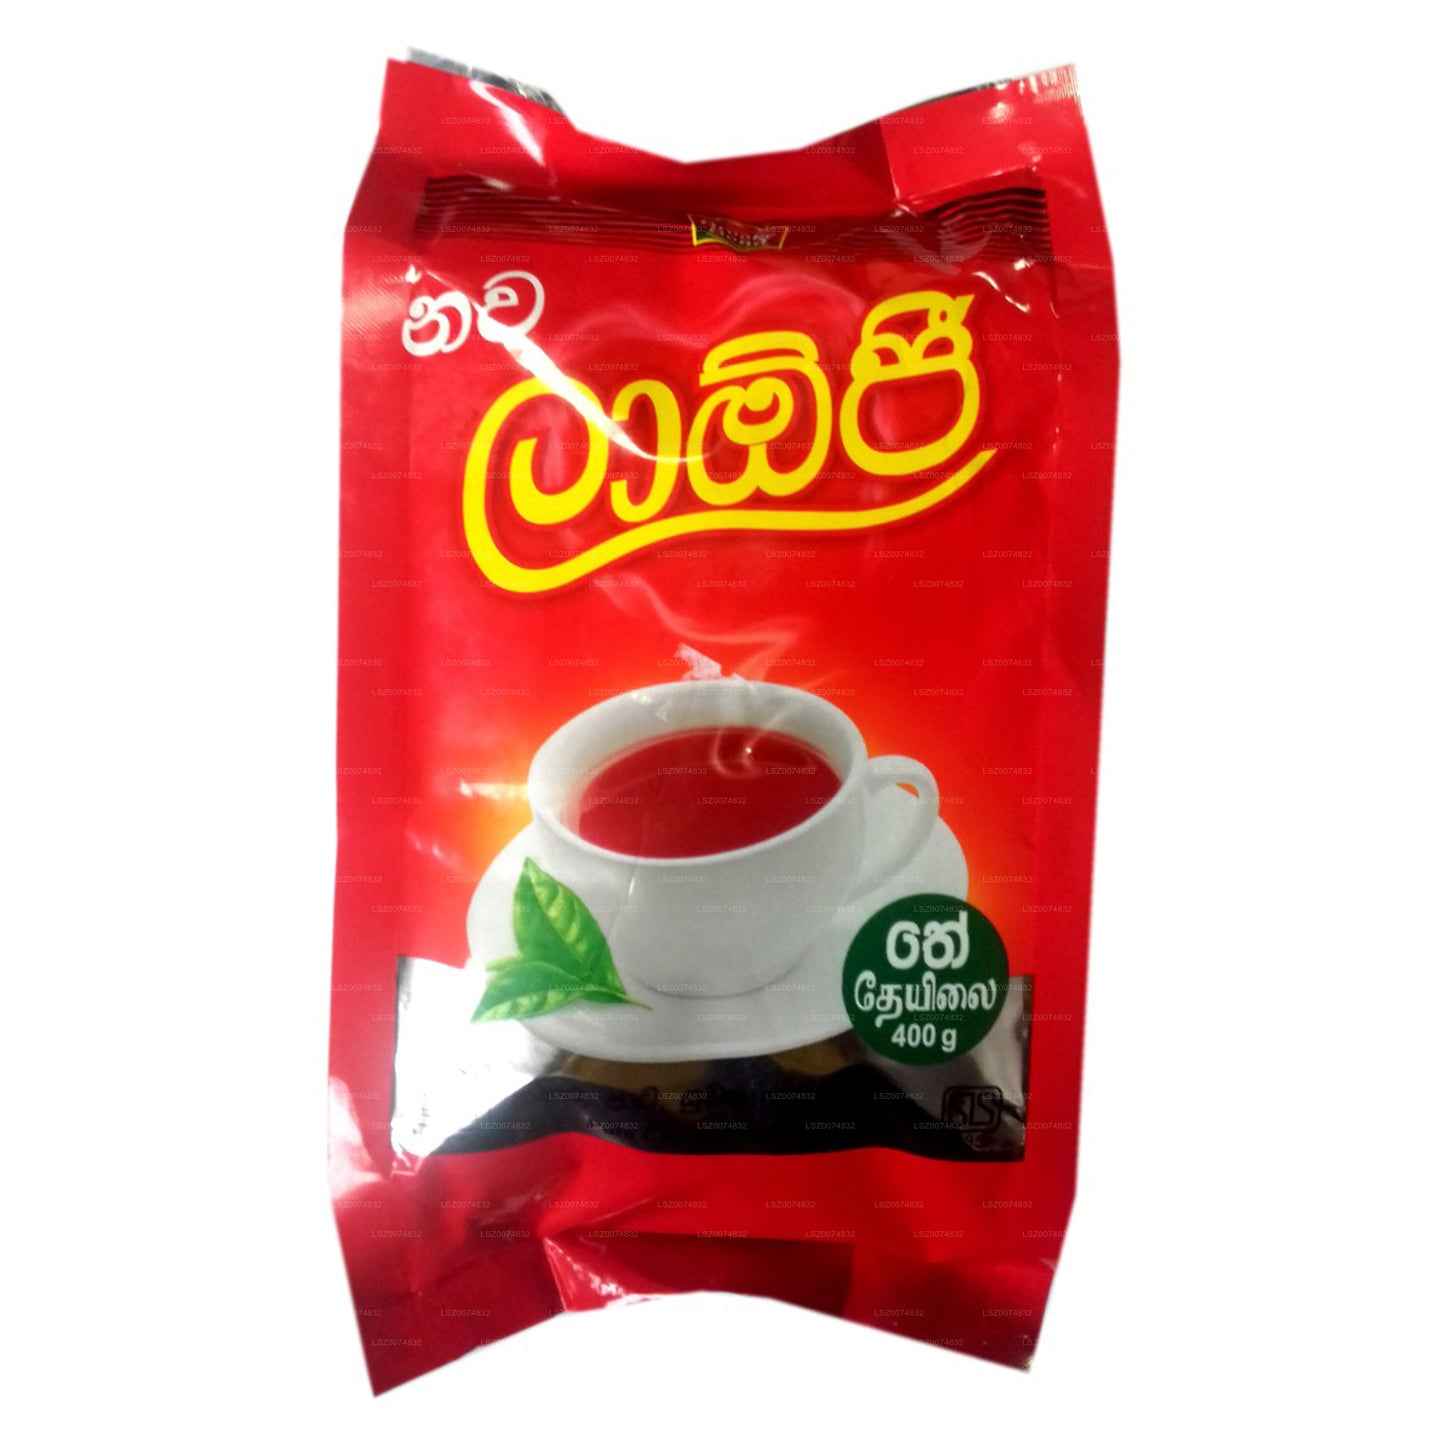 Laojee Pure Ceylon Black Tea Pouch (400g)